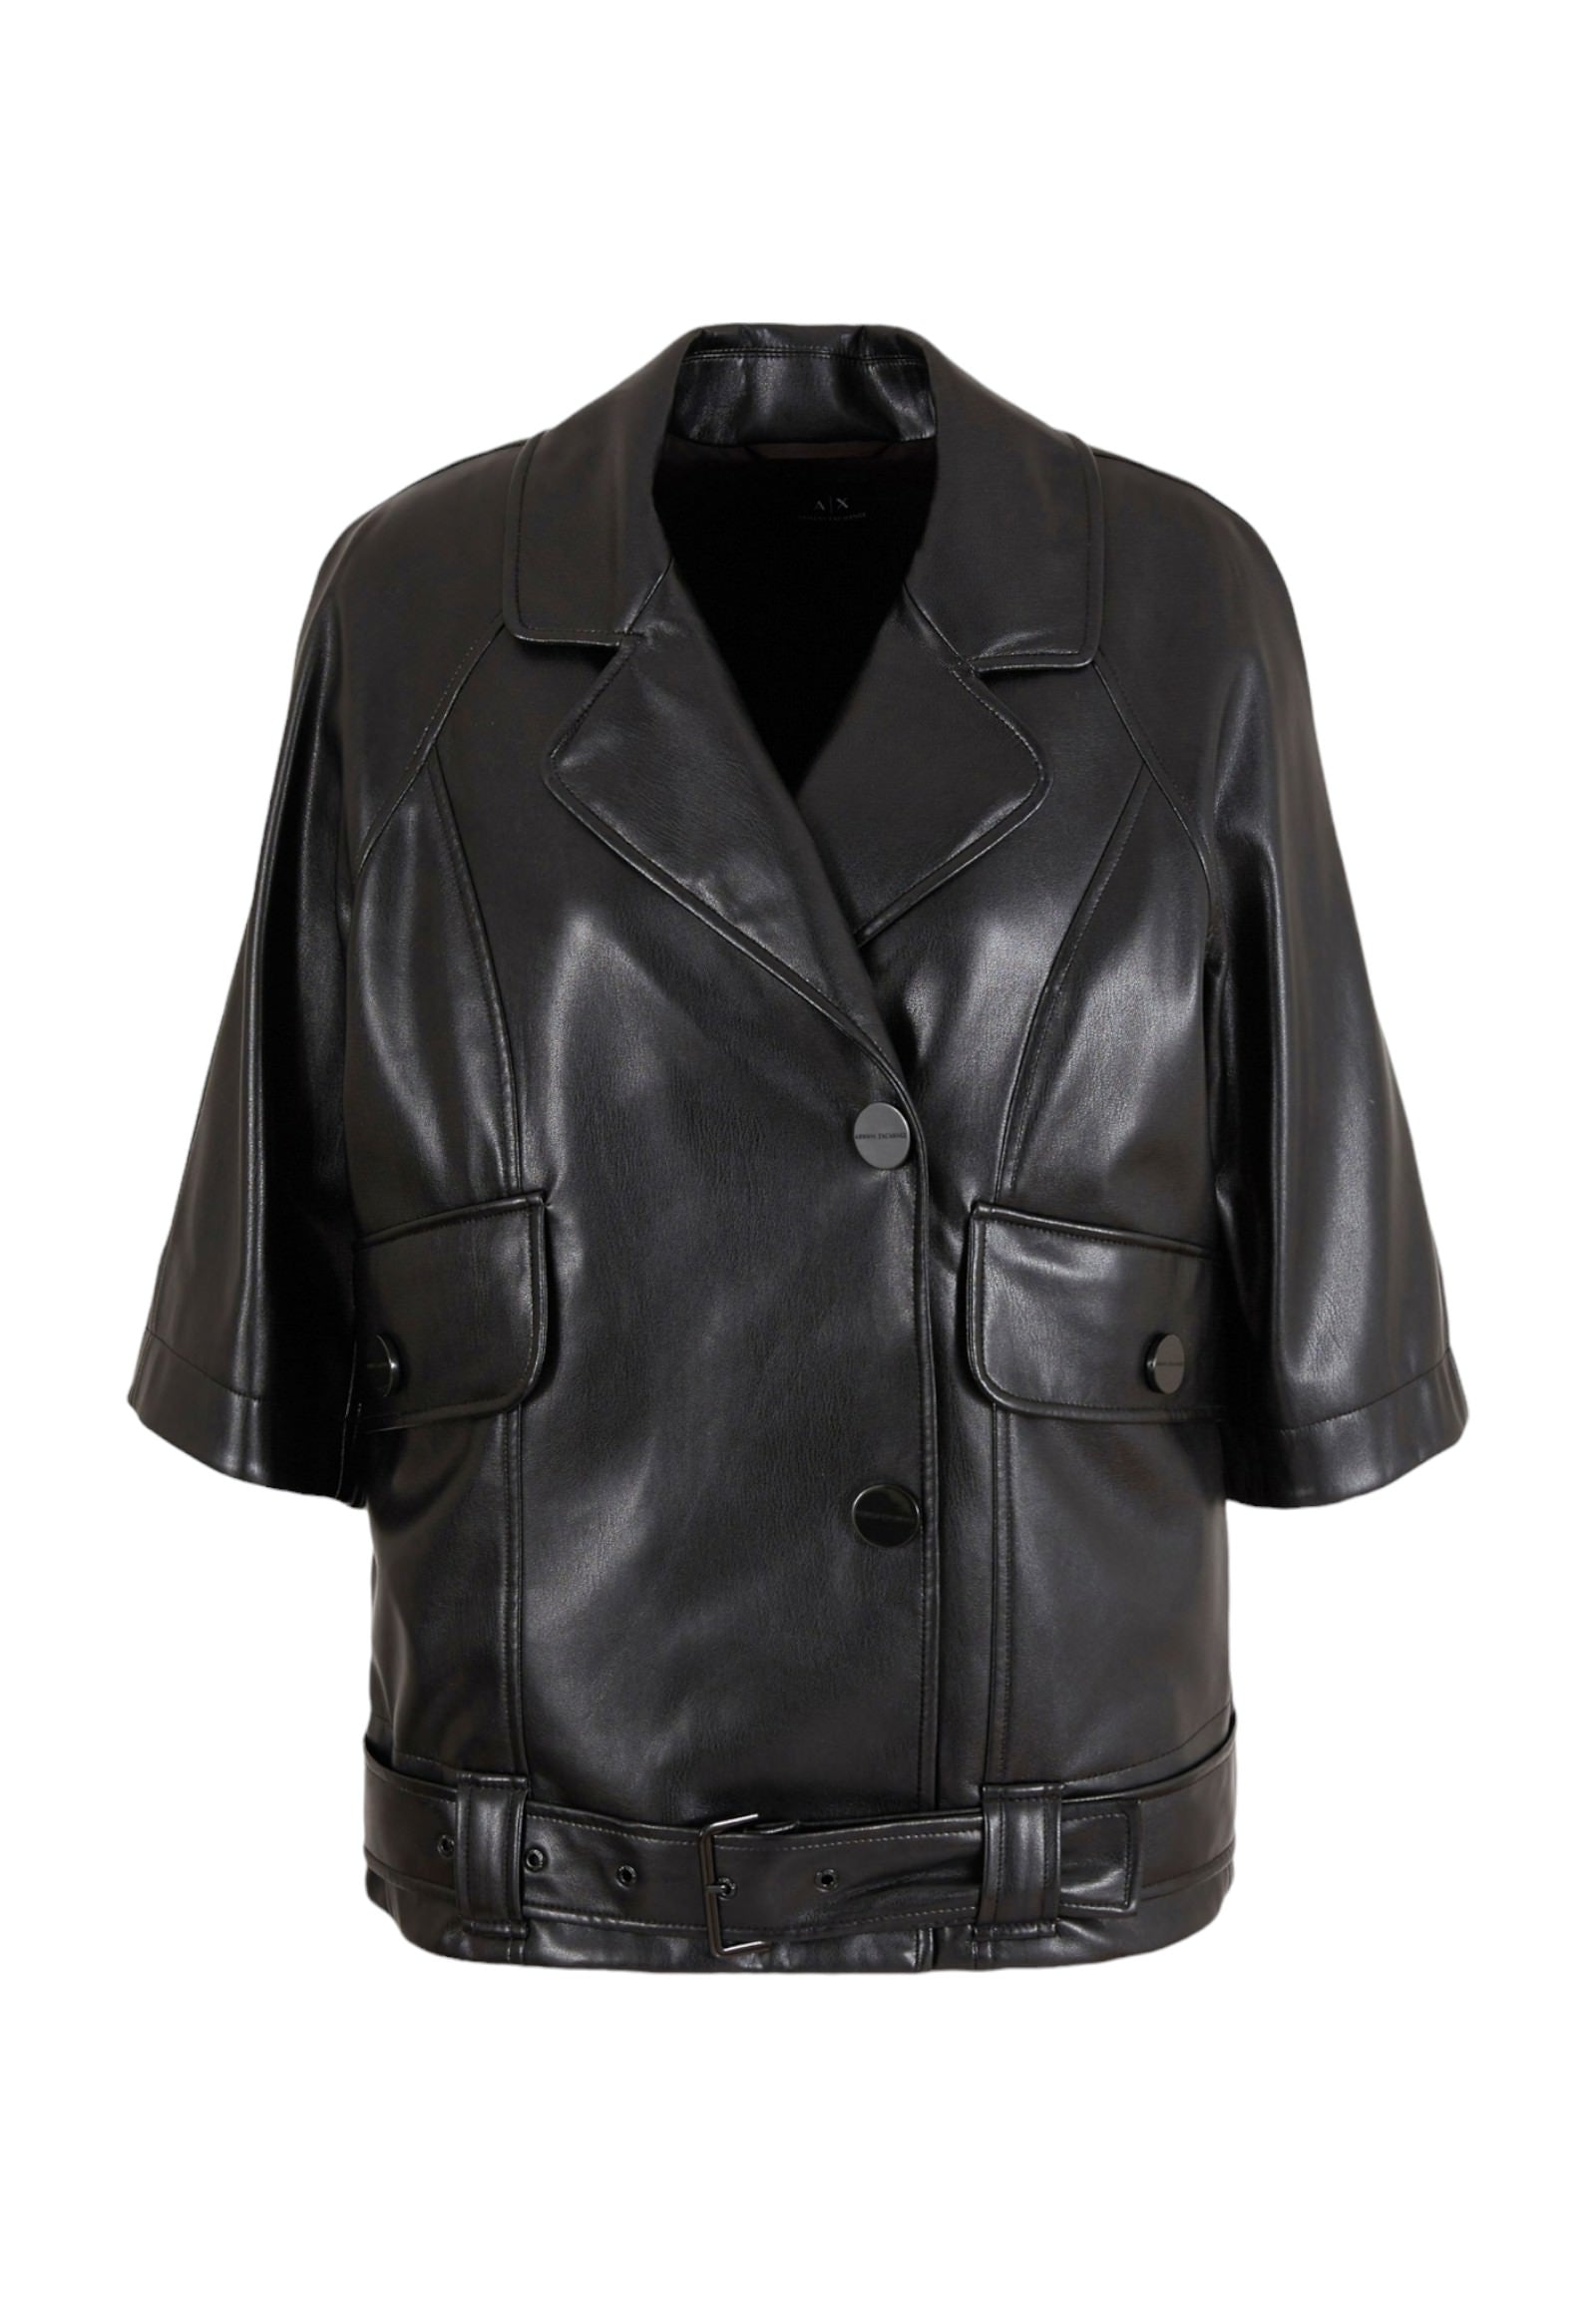 3dyb23 Black Leather Jacket